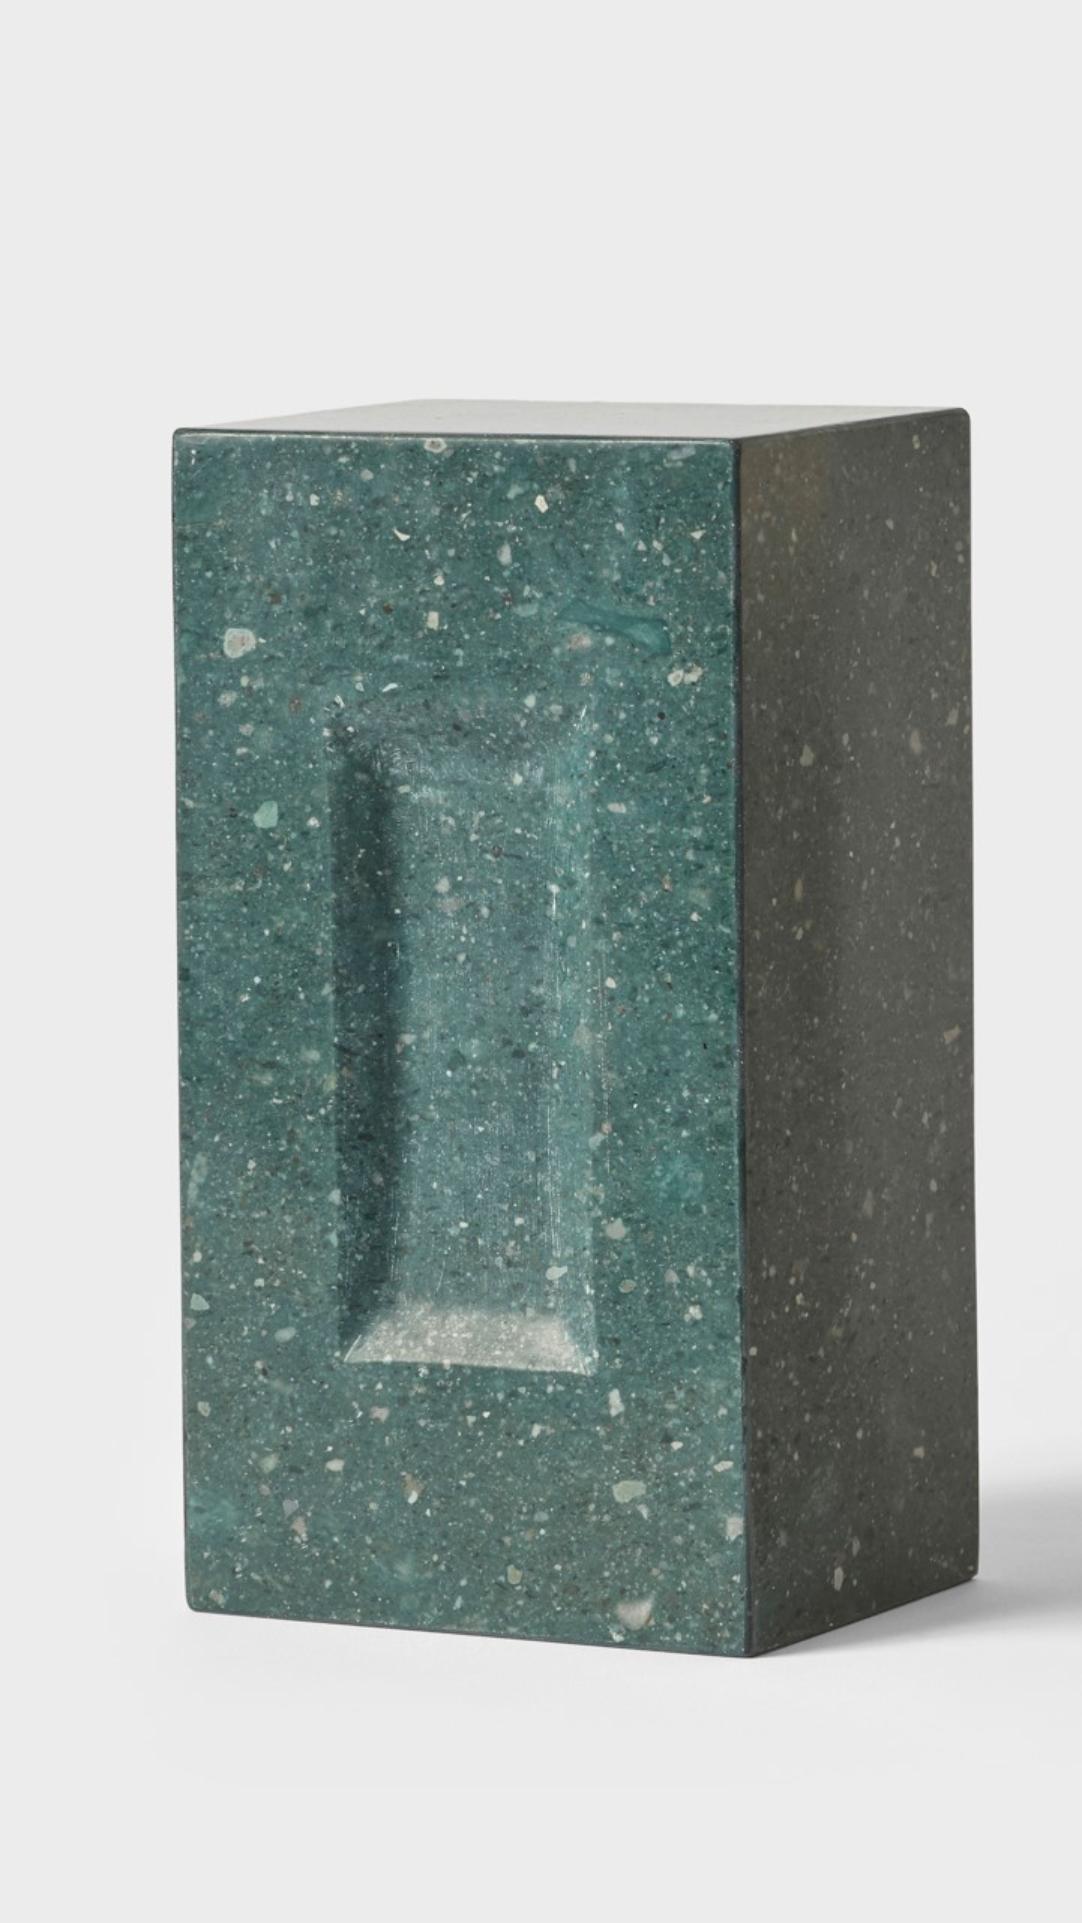 Ziegelstein von Estudio Rafael Freyre
Abmessungen: B 12,5 T 9 x H 23 cm 
MATERIALIEN: Anden-Steine
Auch erhältlich: andere Ausführungen.

Der Ziegelstein ist ein allgemeines konstruktives Element, das Teil des städtischen Imaginären ist. In Peru ist